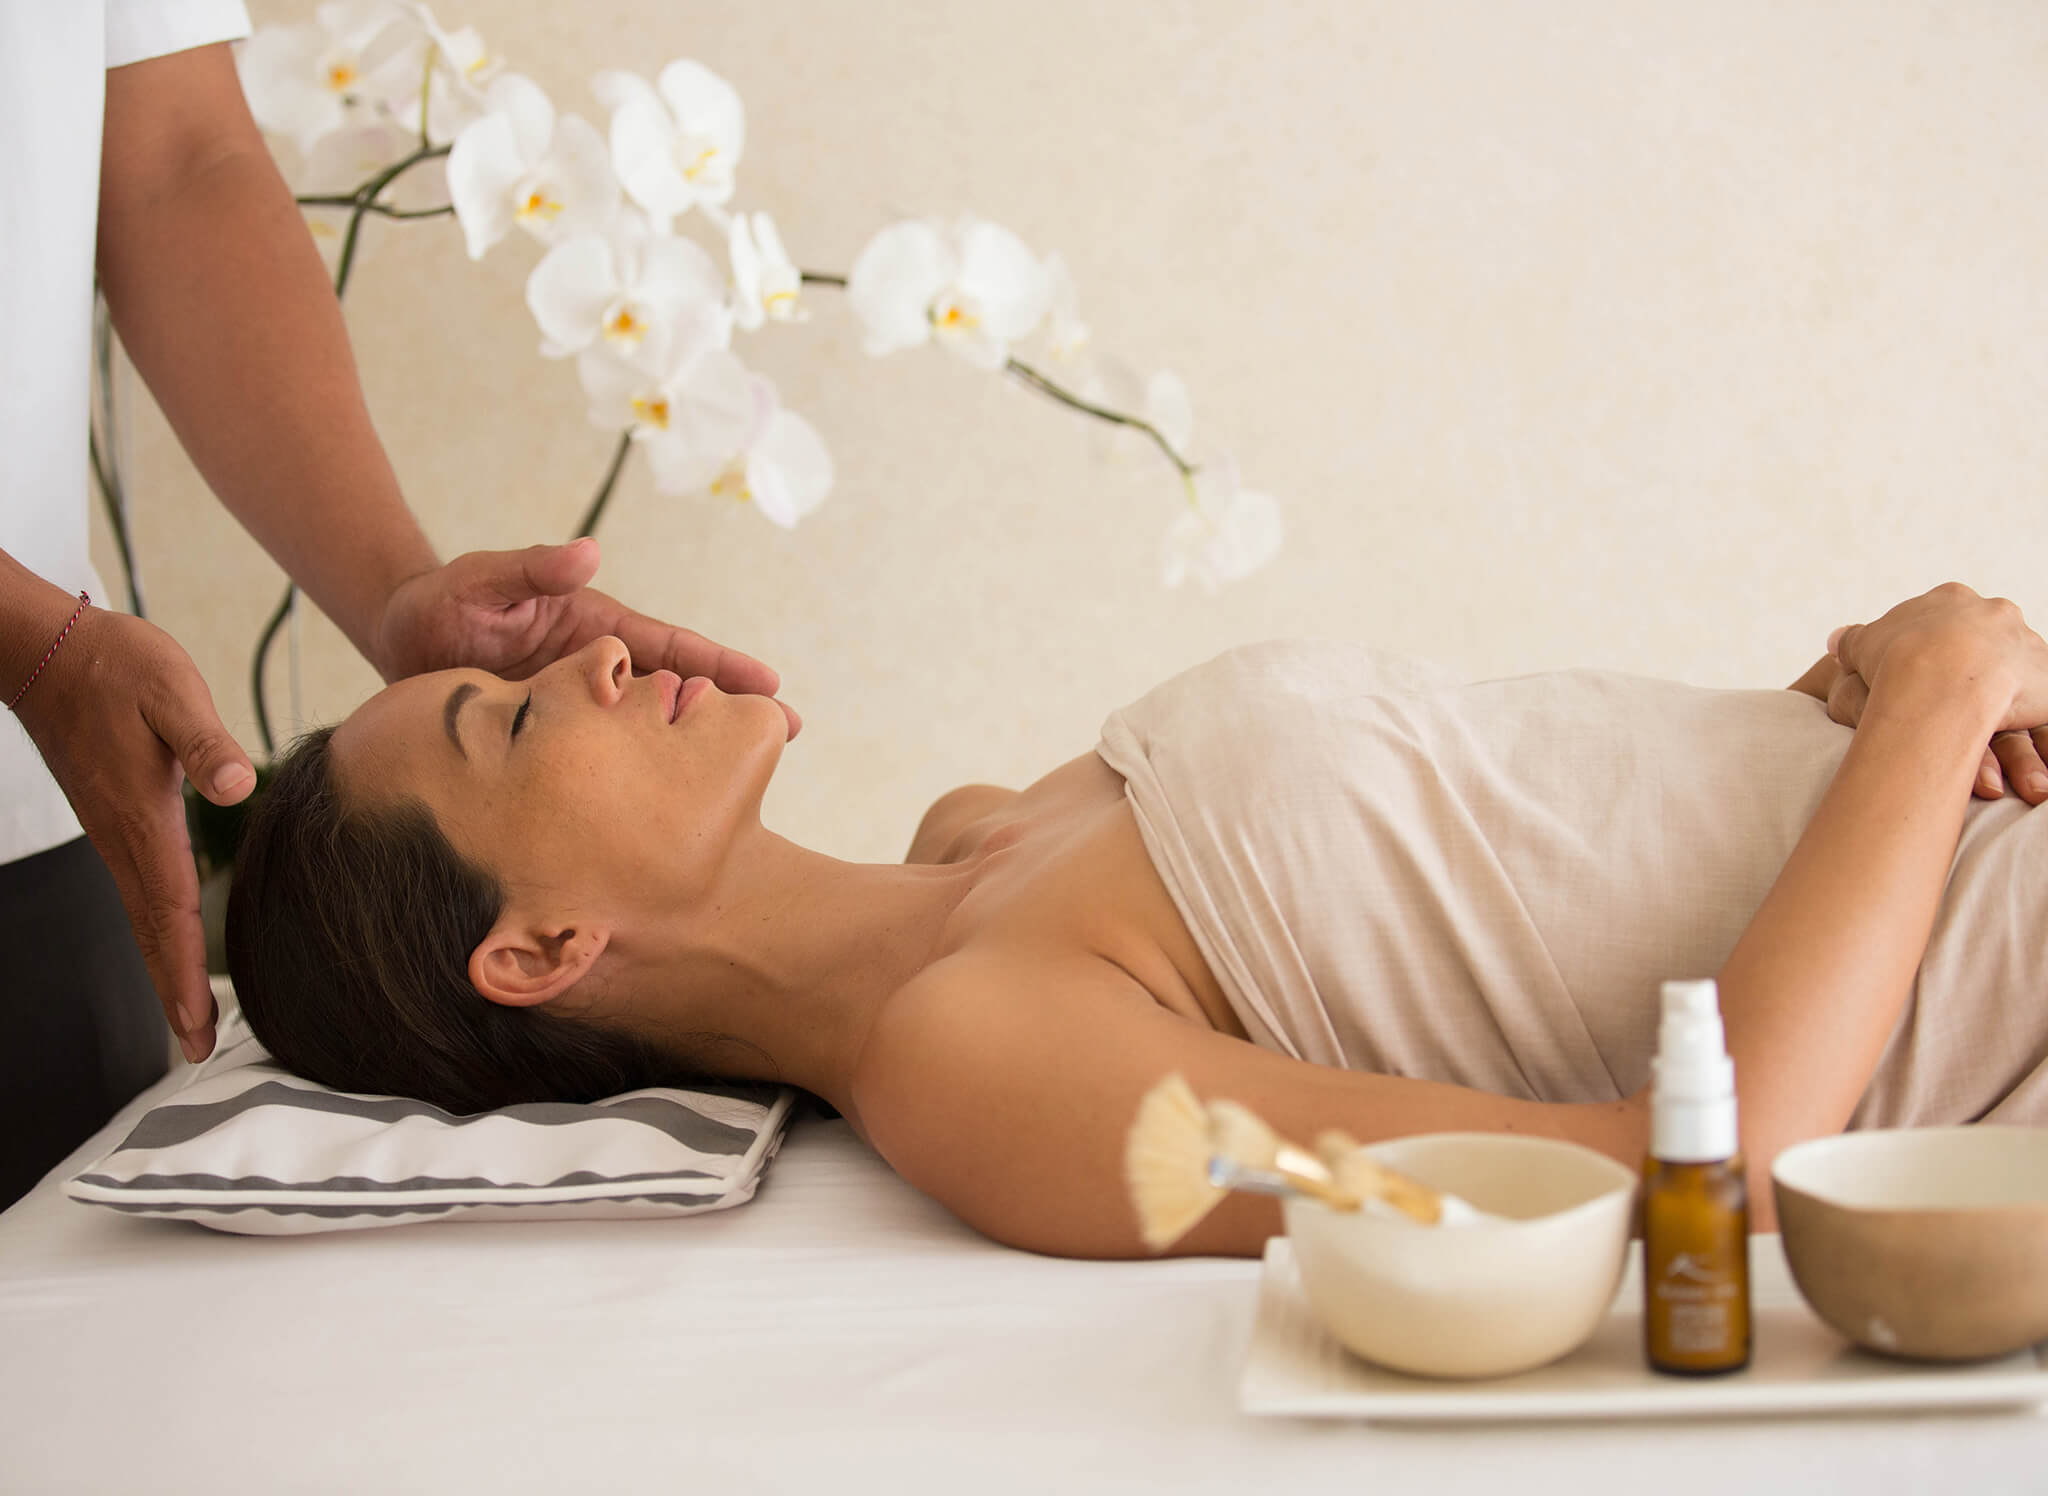 Hotel massage. Балийский массаж. Массаж в гостинице. Spa-терапия в индустрии красоты. Шаванна спа.